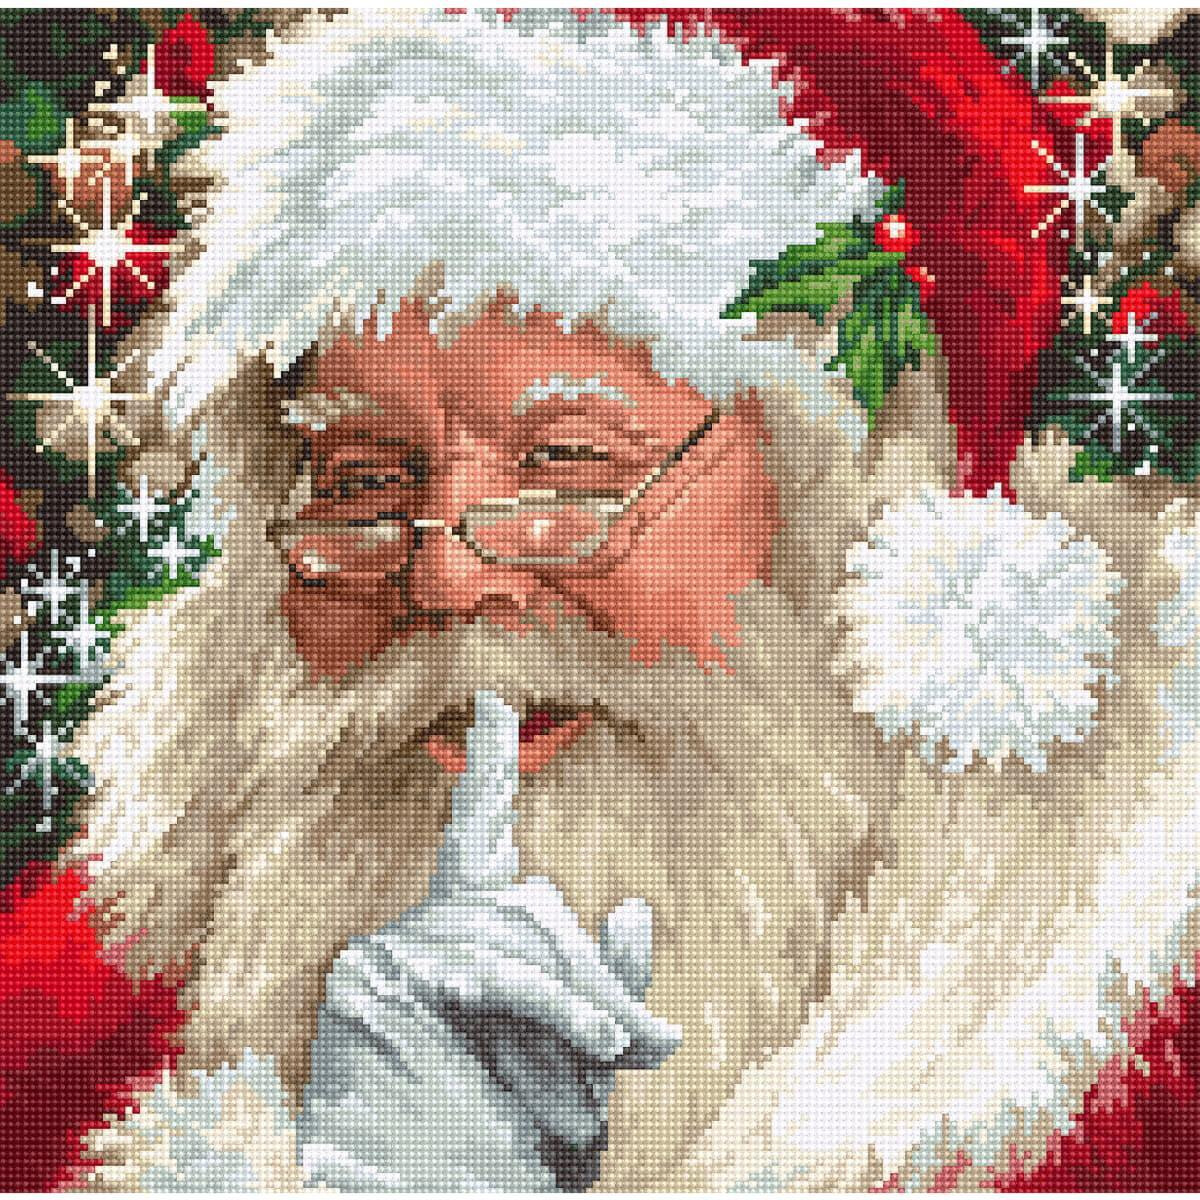 Immagine a punto croce di Babbo Natale con barba bianca,...